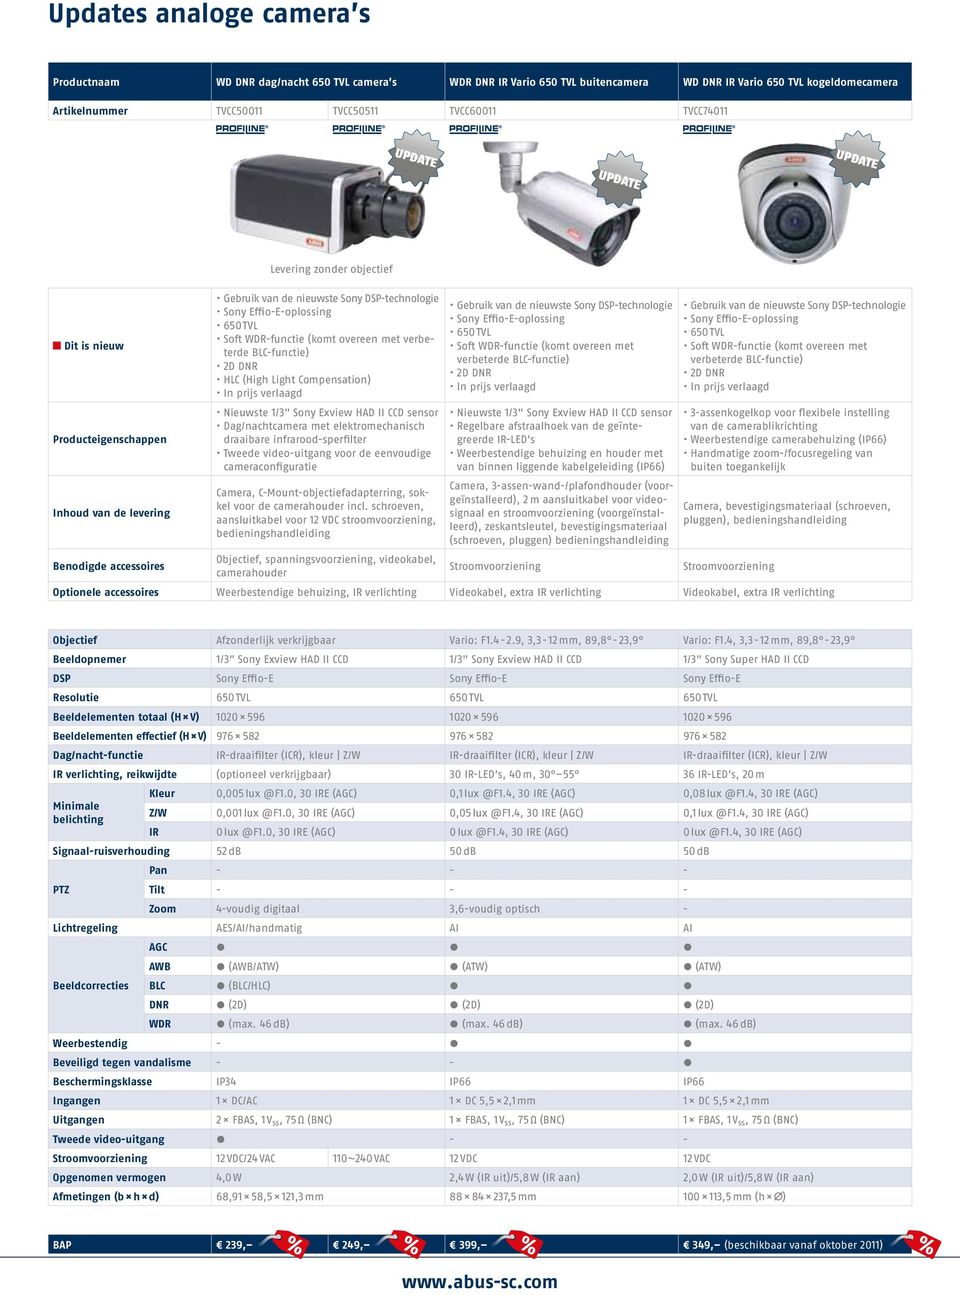 verlaagd Nieuwste 1/3" Sony Exview HAD II CCD sensor Dag/nachtcamera met elektromechanisch draaibare infrarood-sperfilter Tweede video-uitgang voor de eenvoudige cameraconfiguratie Camera,